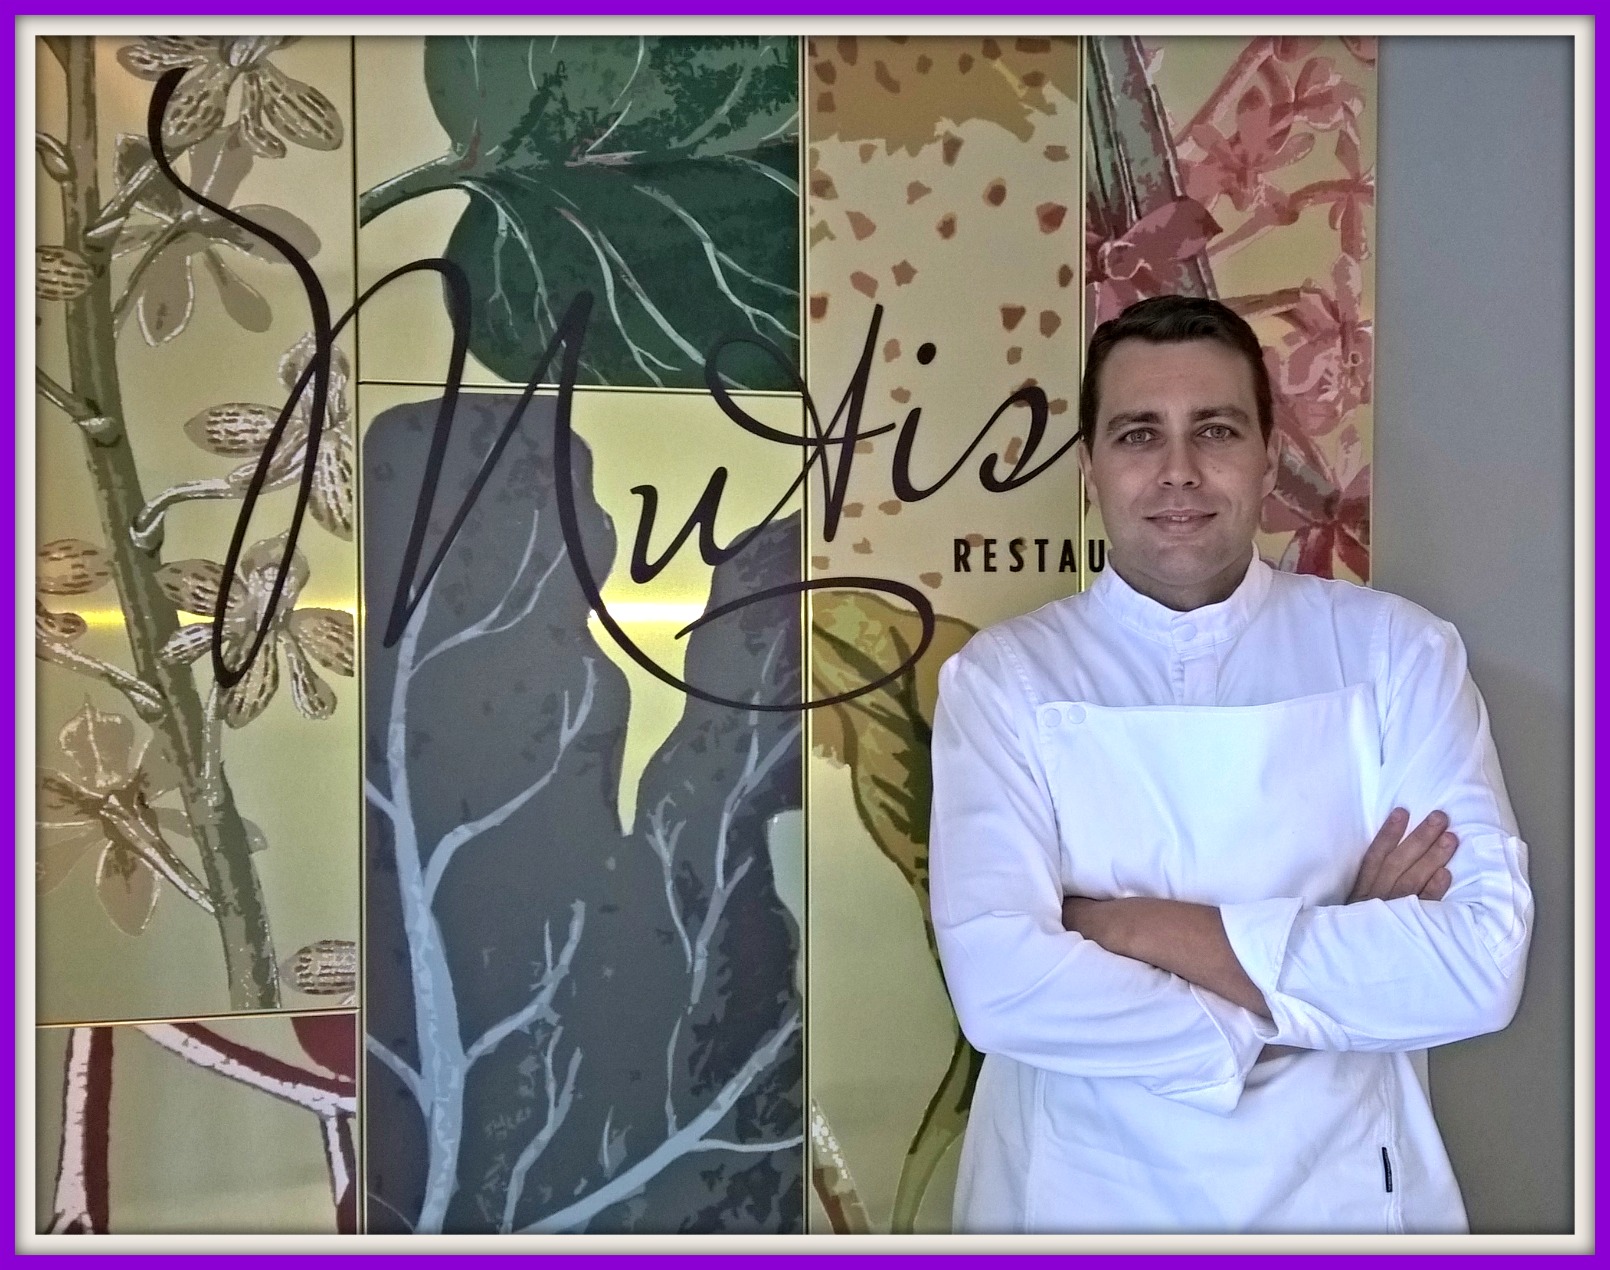 Ignacio Martínez chef del innovador Restaurante Mutis de Madrid